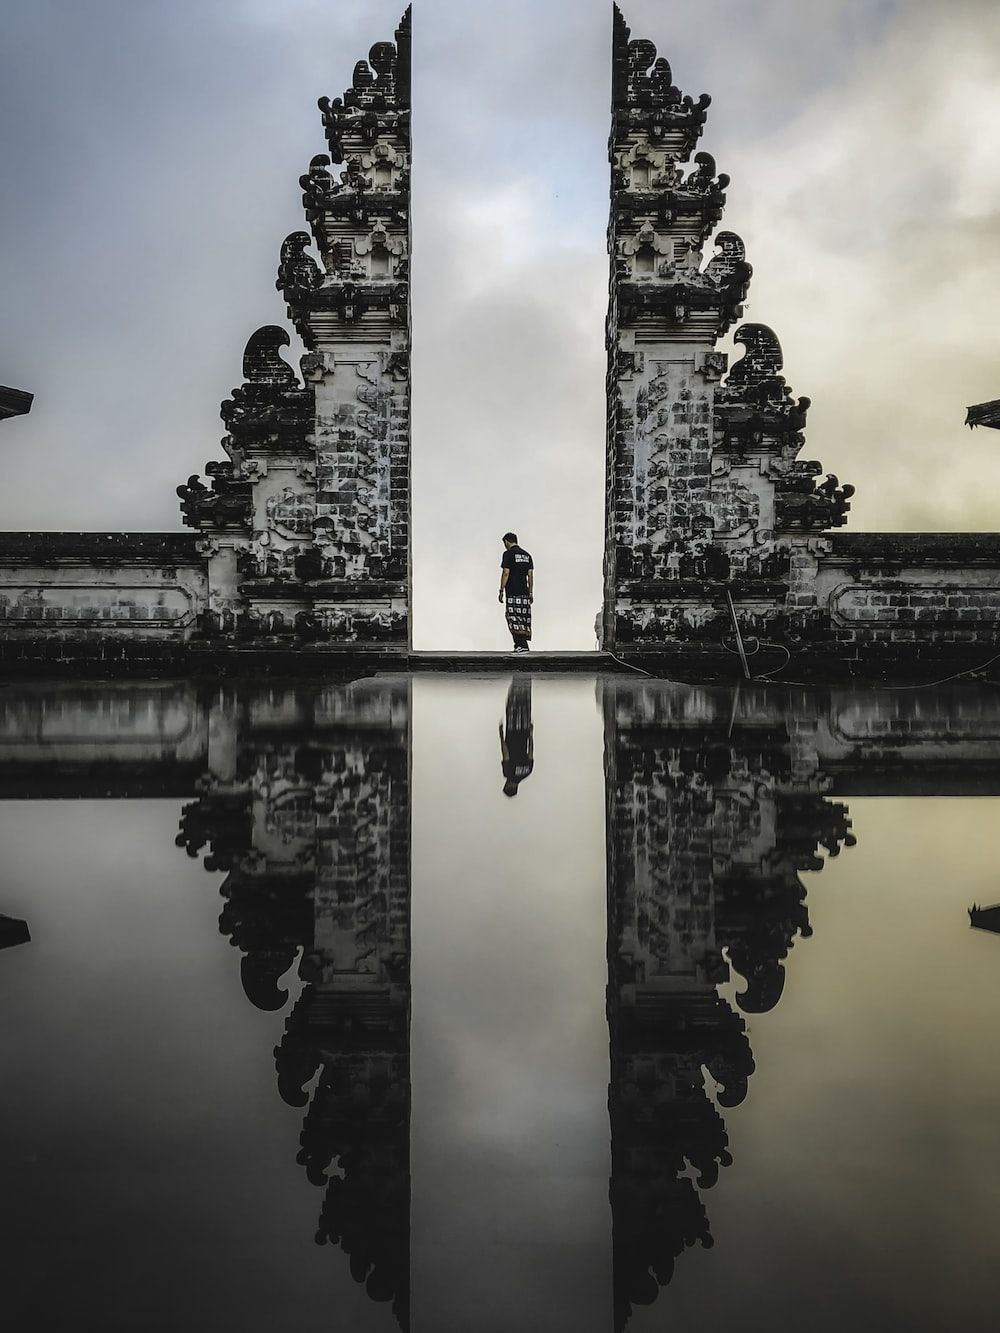  Bali Hintergrundbild 1000x1333. Plus de 100 belles image de Bali. Télécharger des image gratuites sur